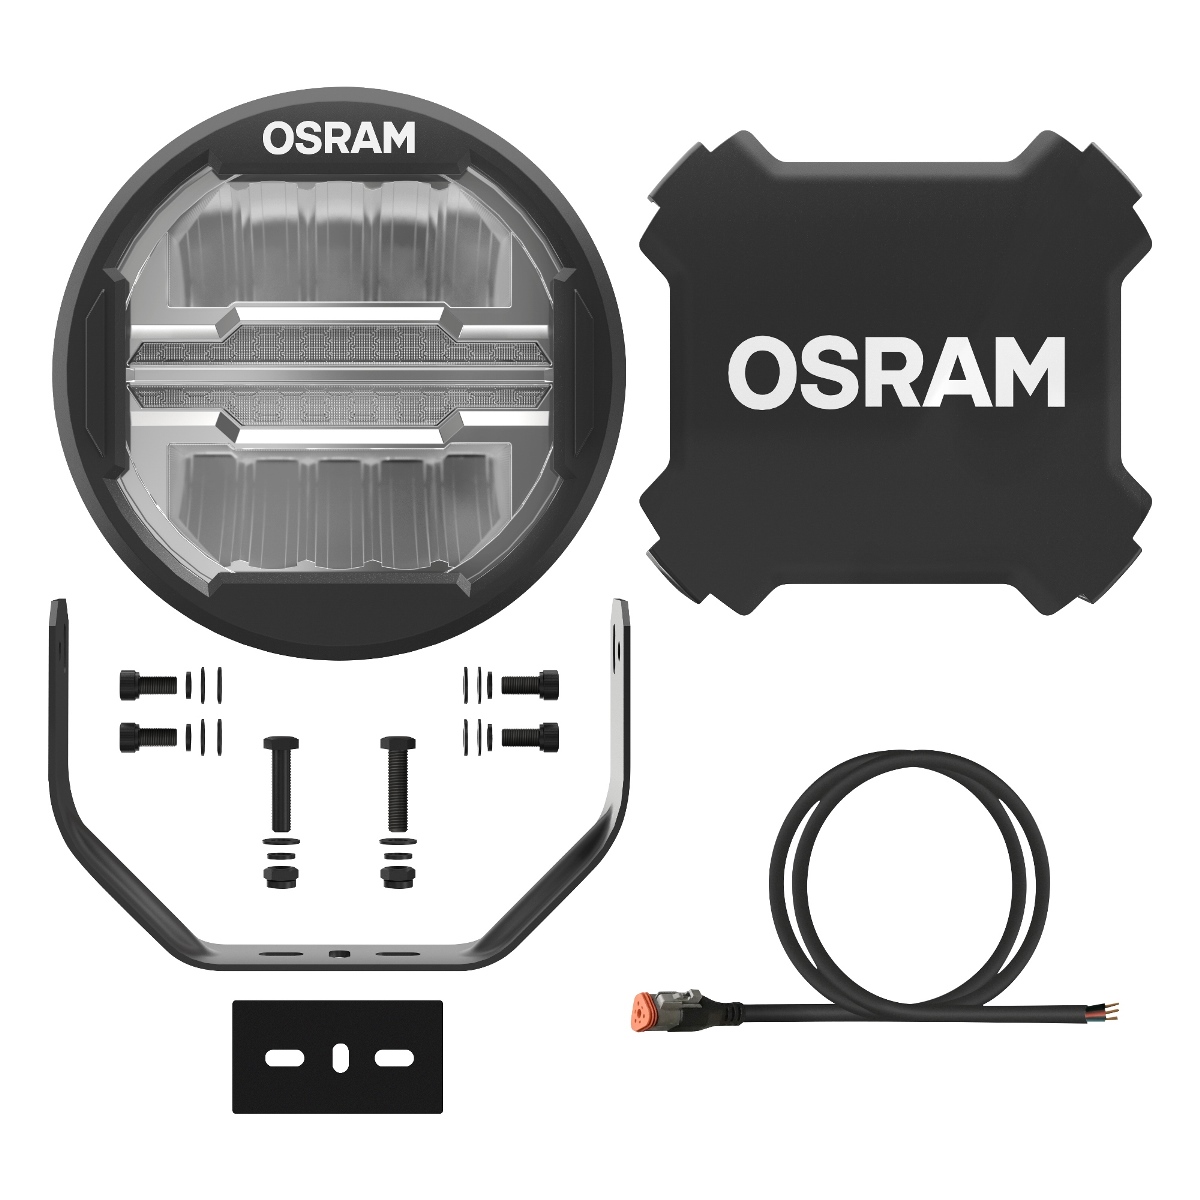 myTuning24 Onlinehandel - Osram LEDriving LED Adapter 07